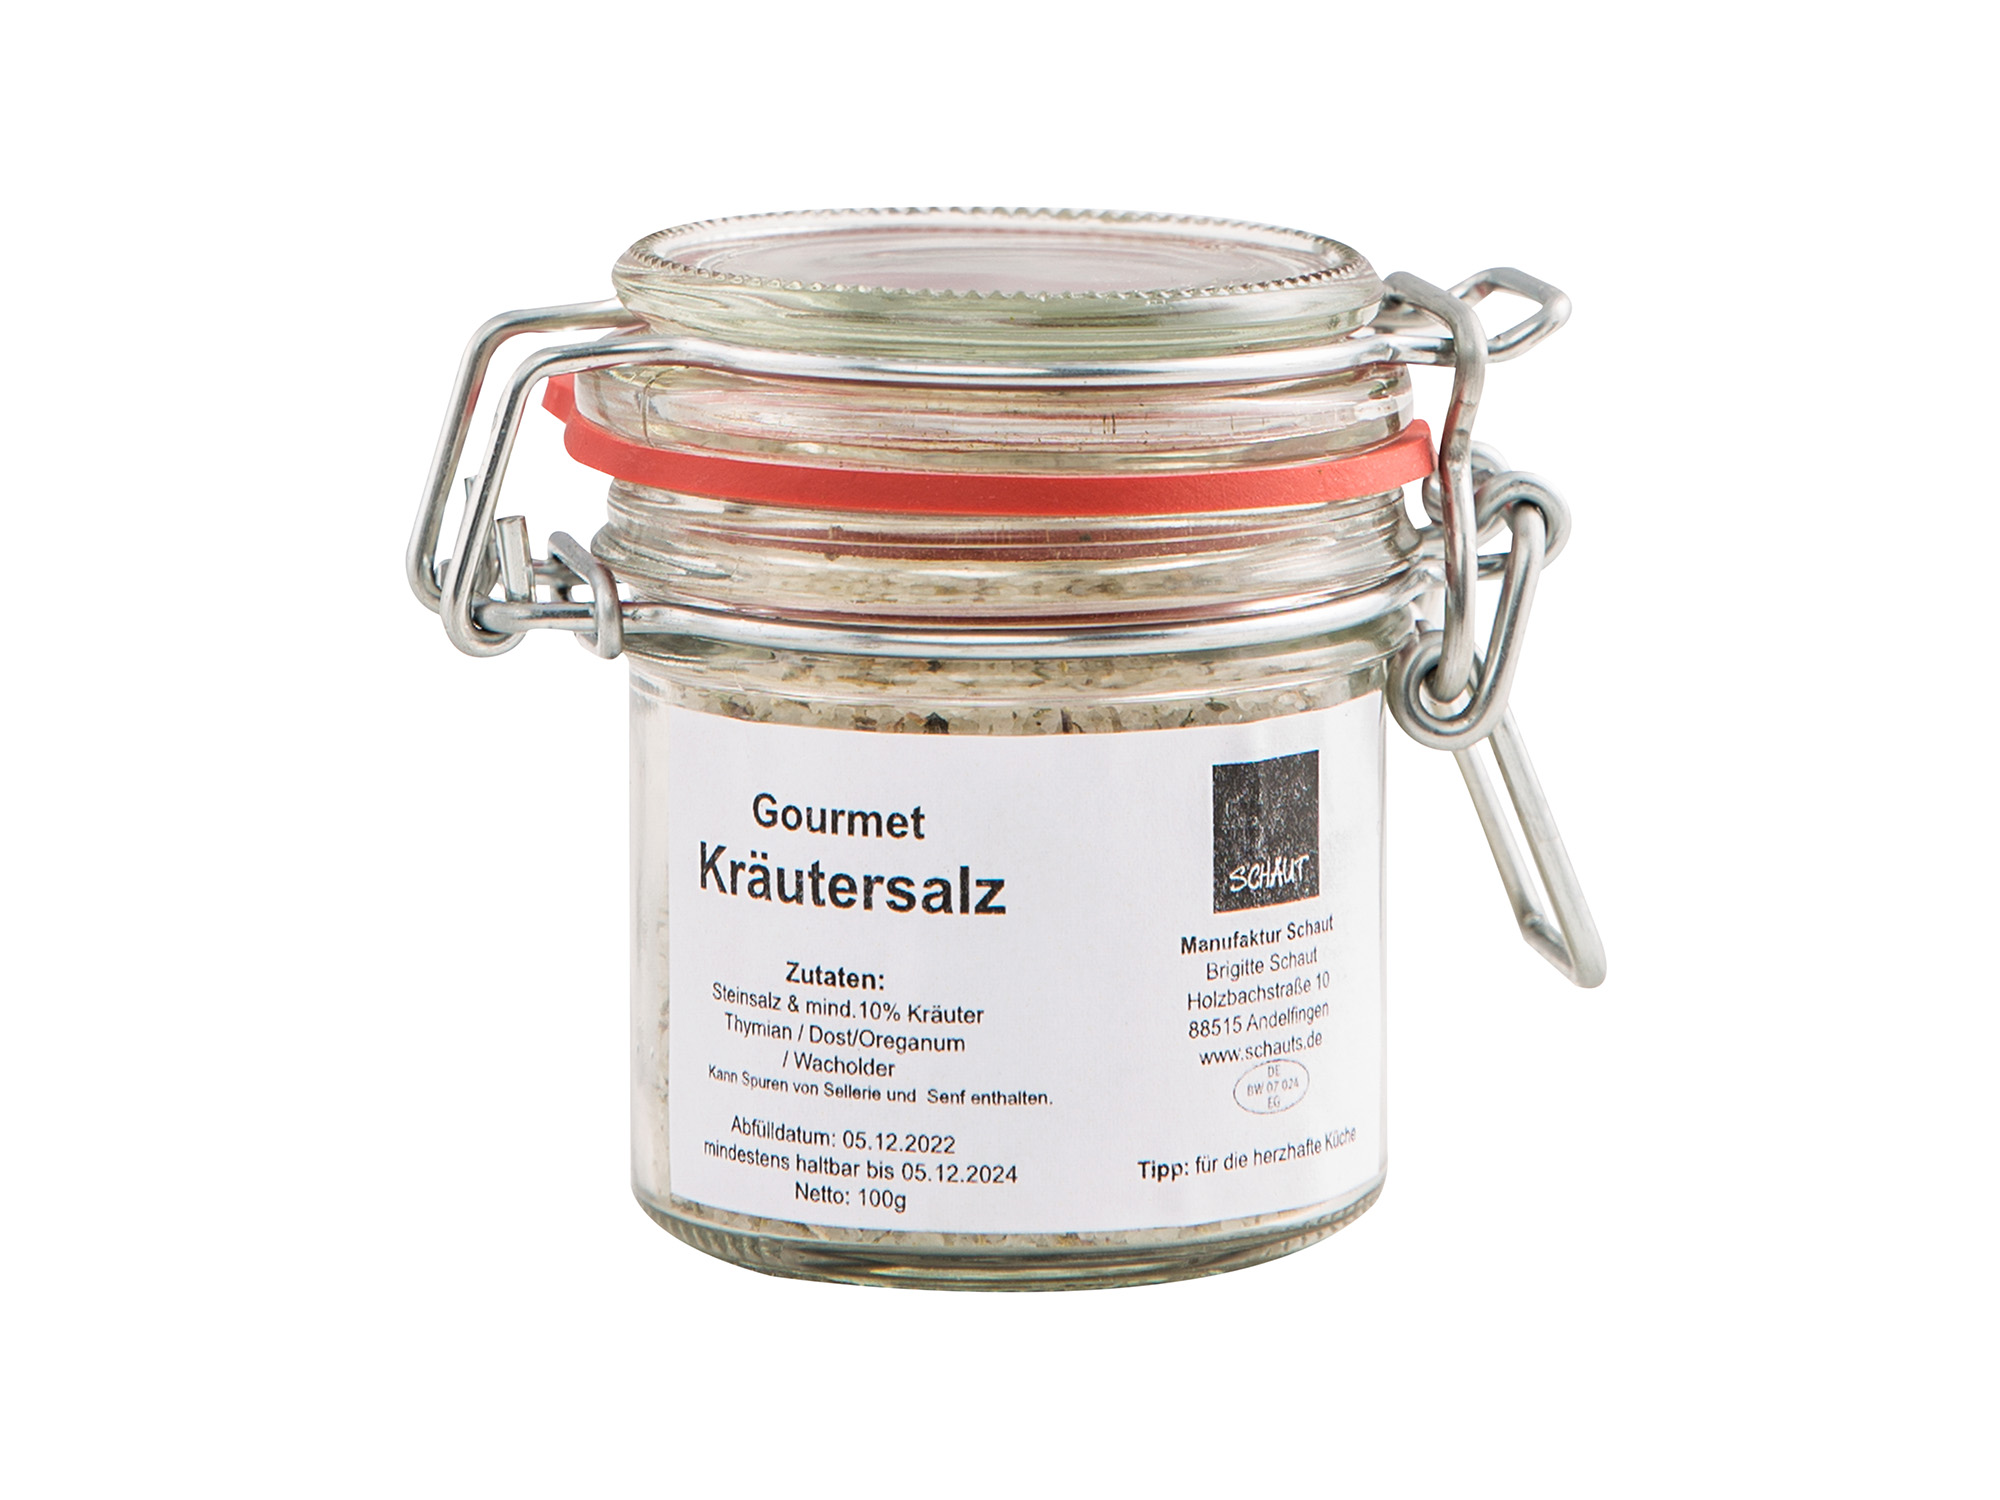 Gourmet Kräutersalz im Glas